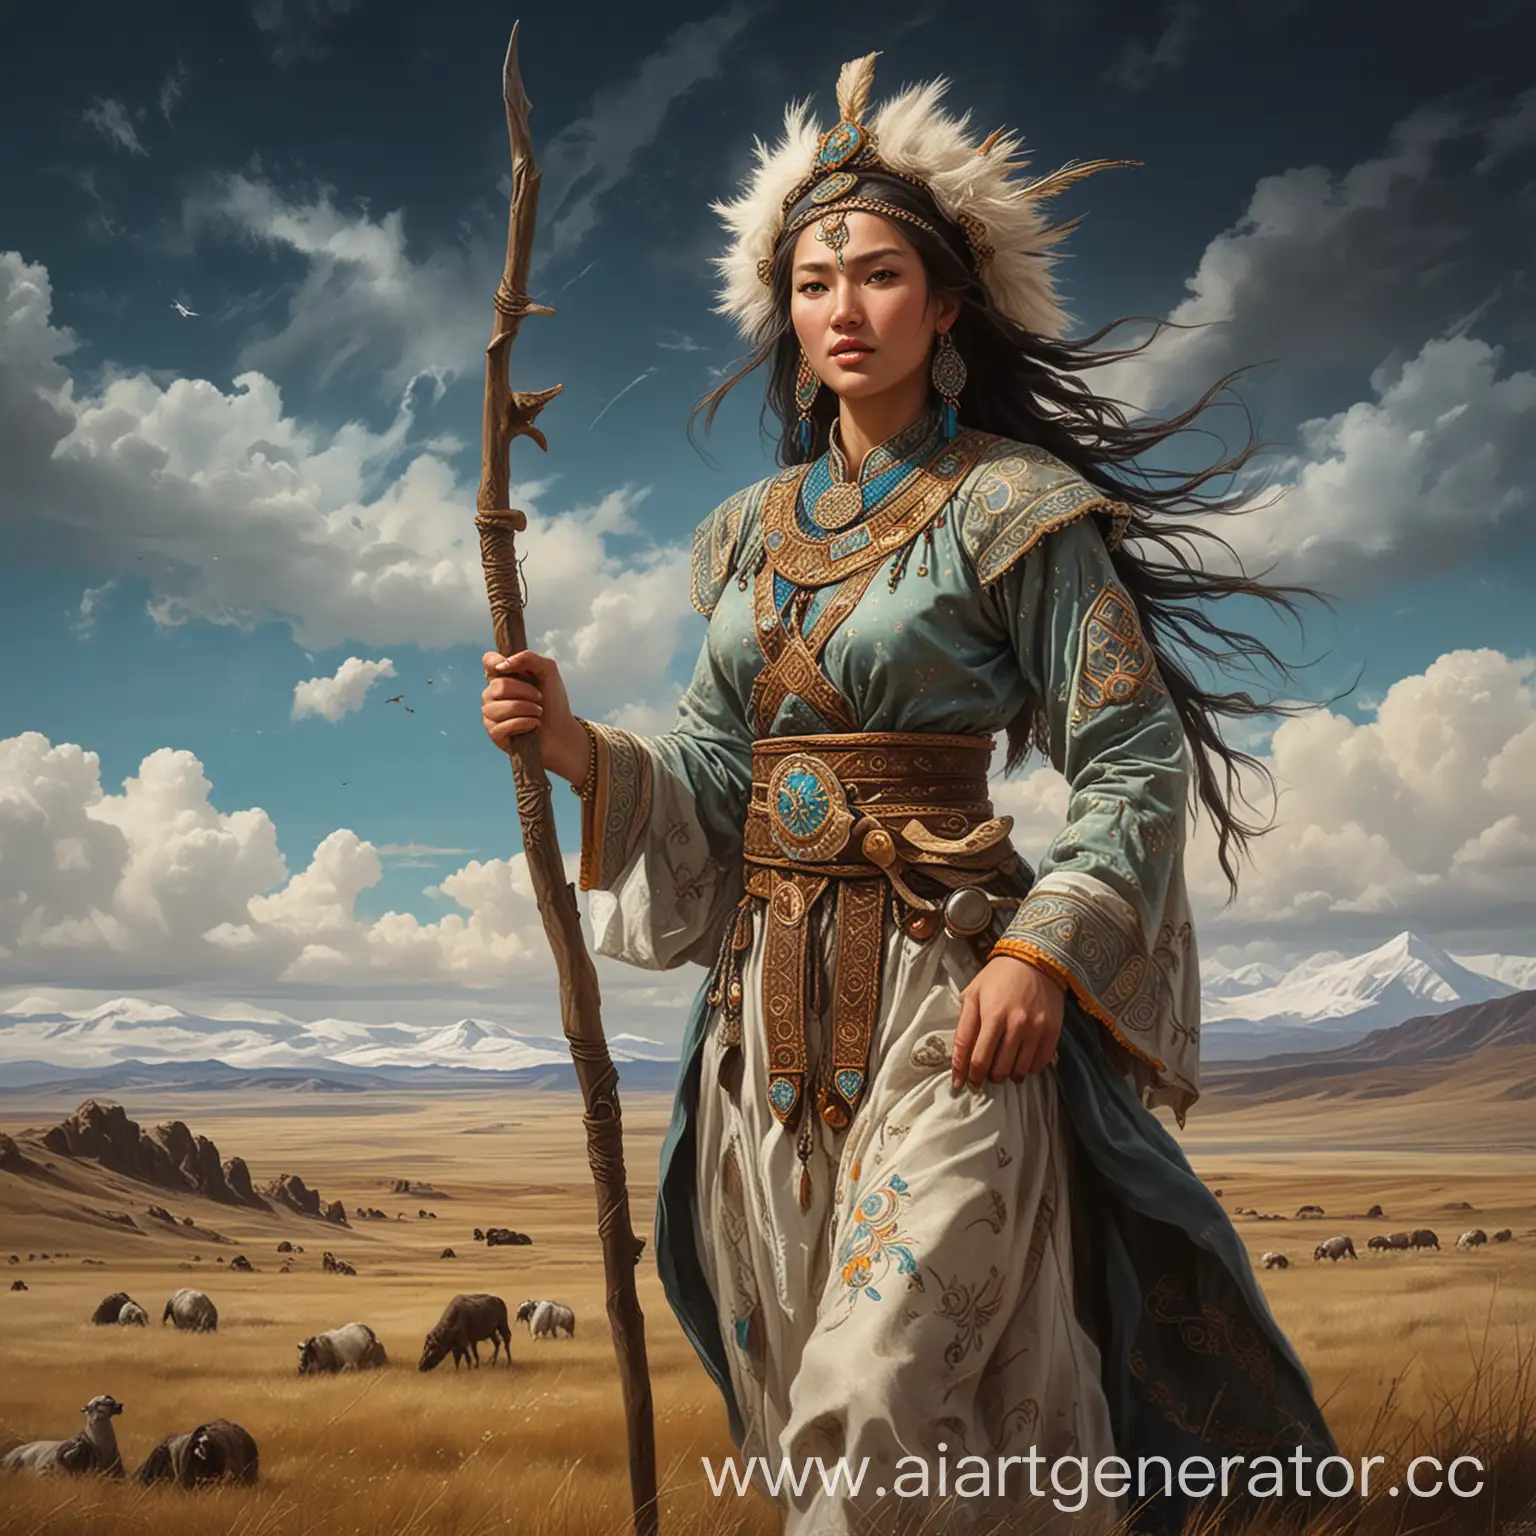 казахская мифология, степь, мифологические существа центральной азии, женщина, торгай